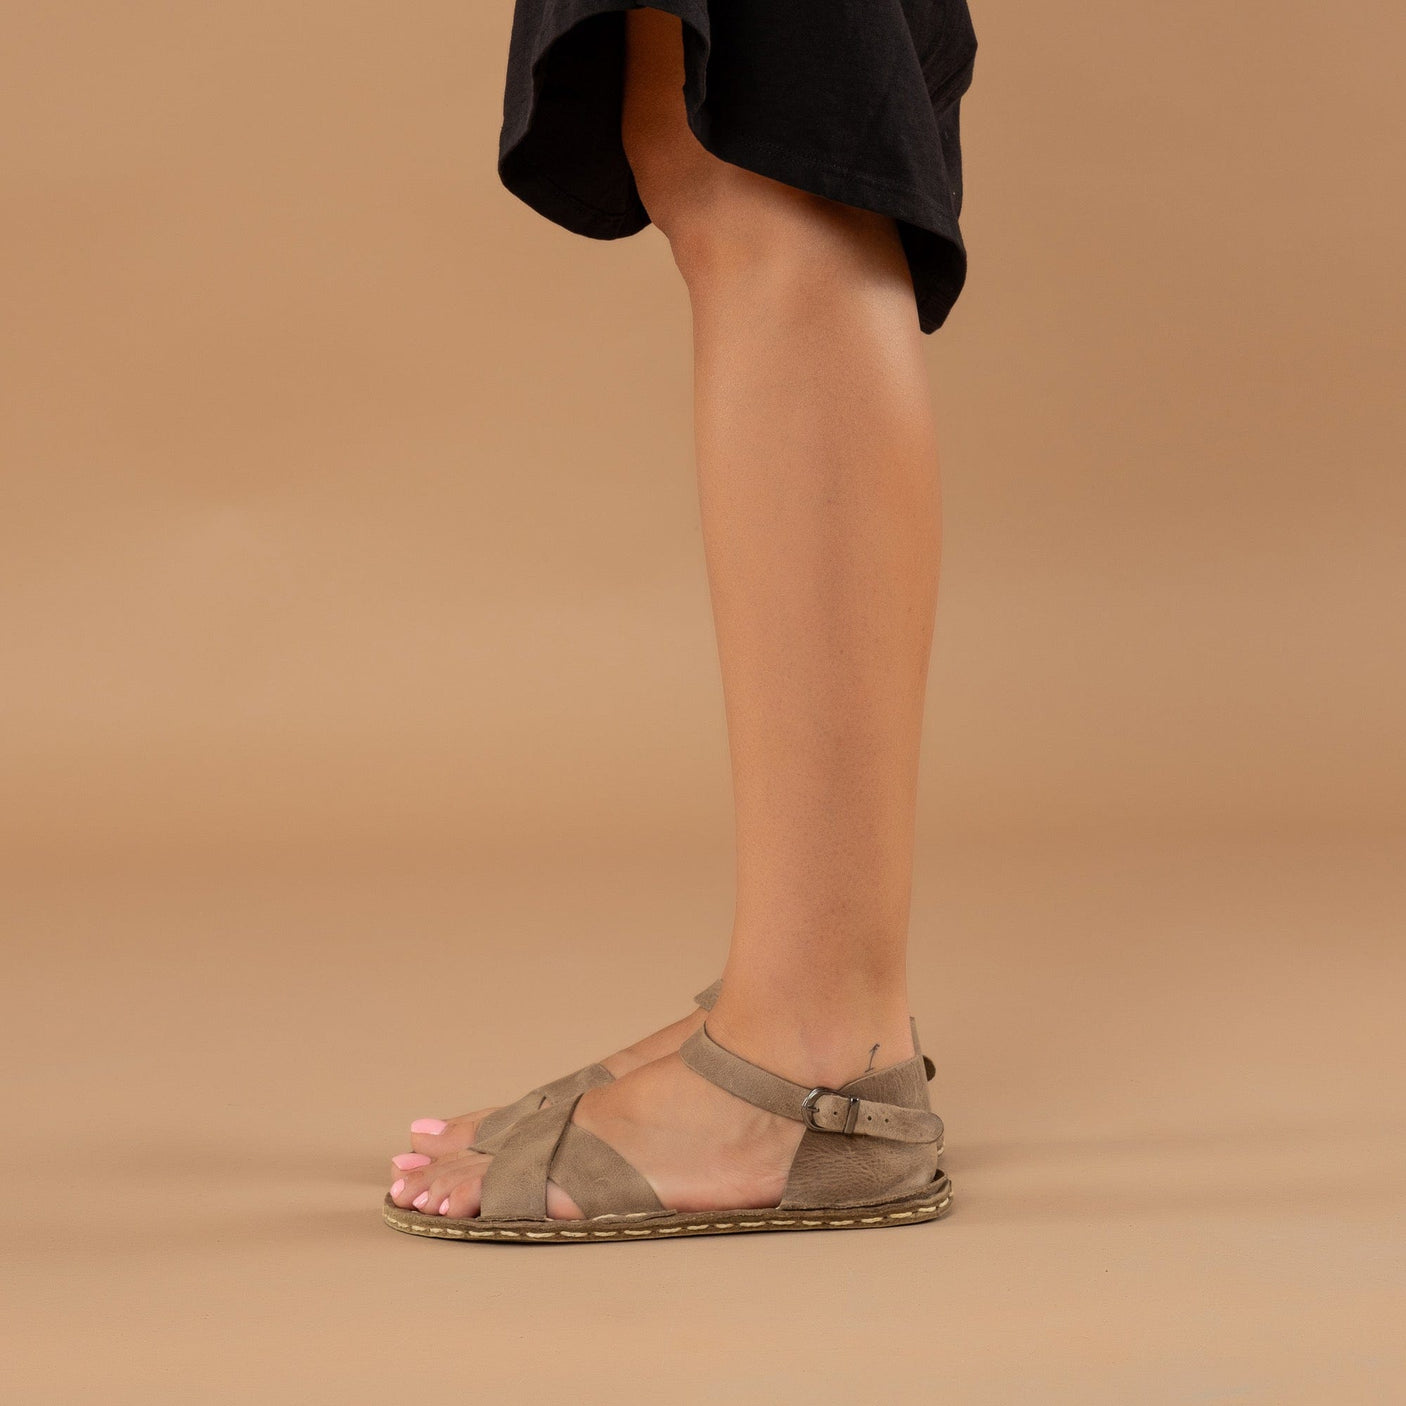 Tan Criss-Cross Barefoot Sandals